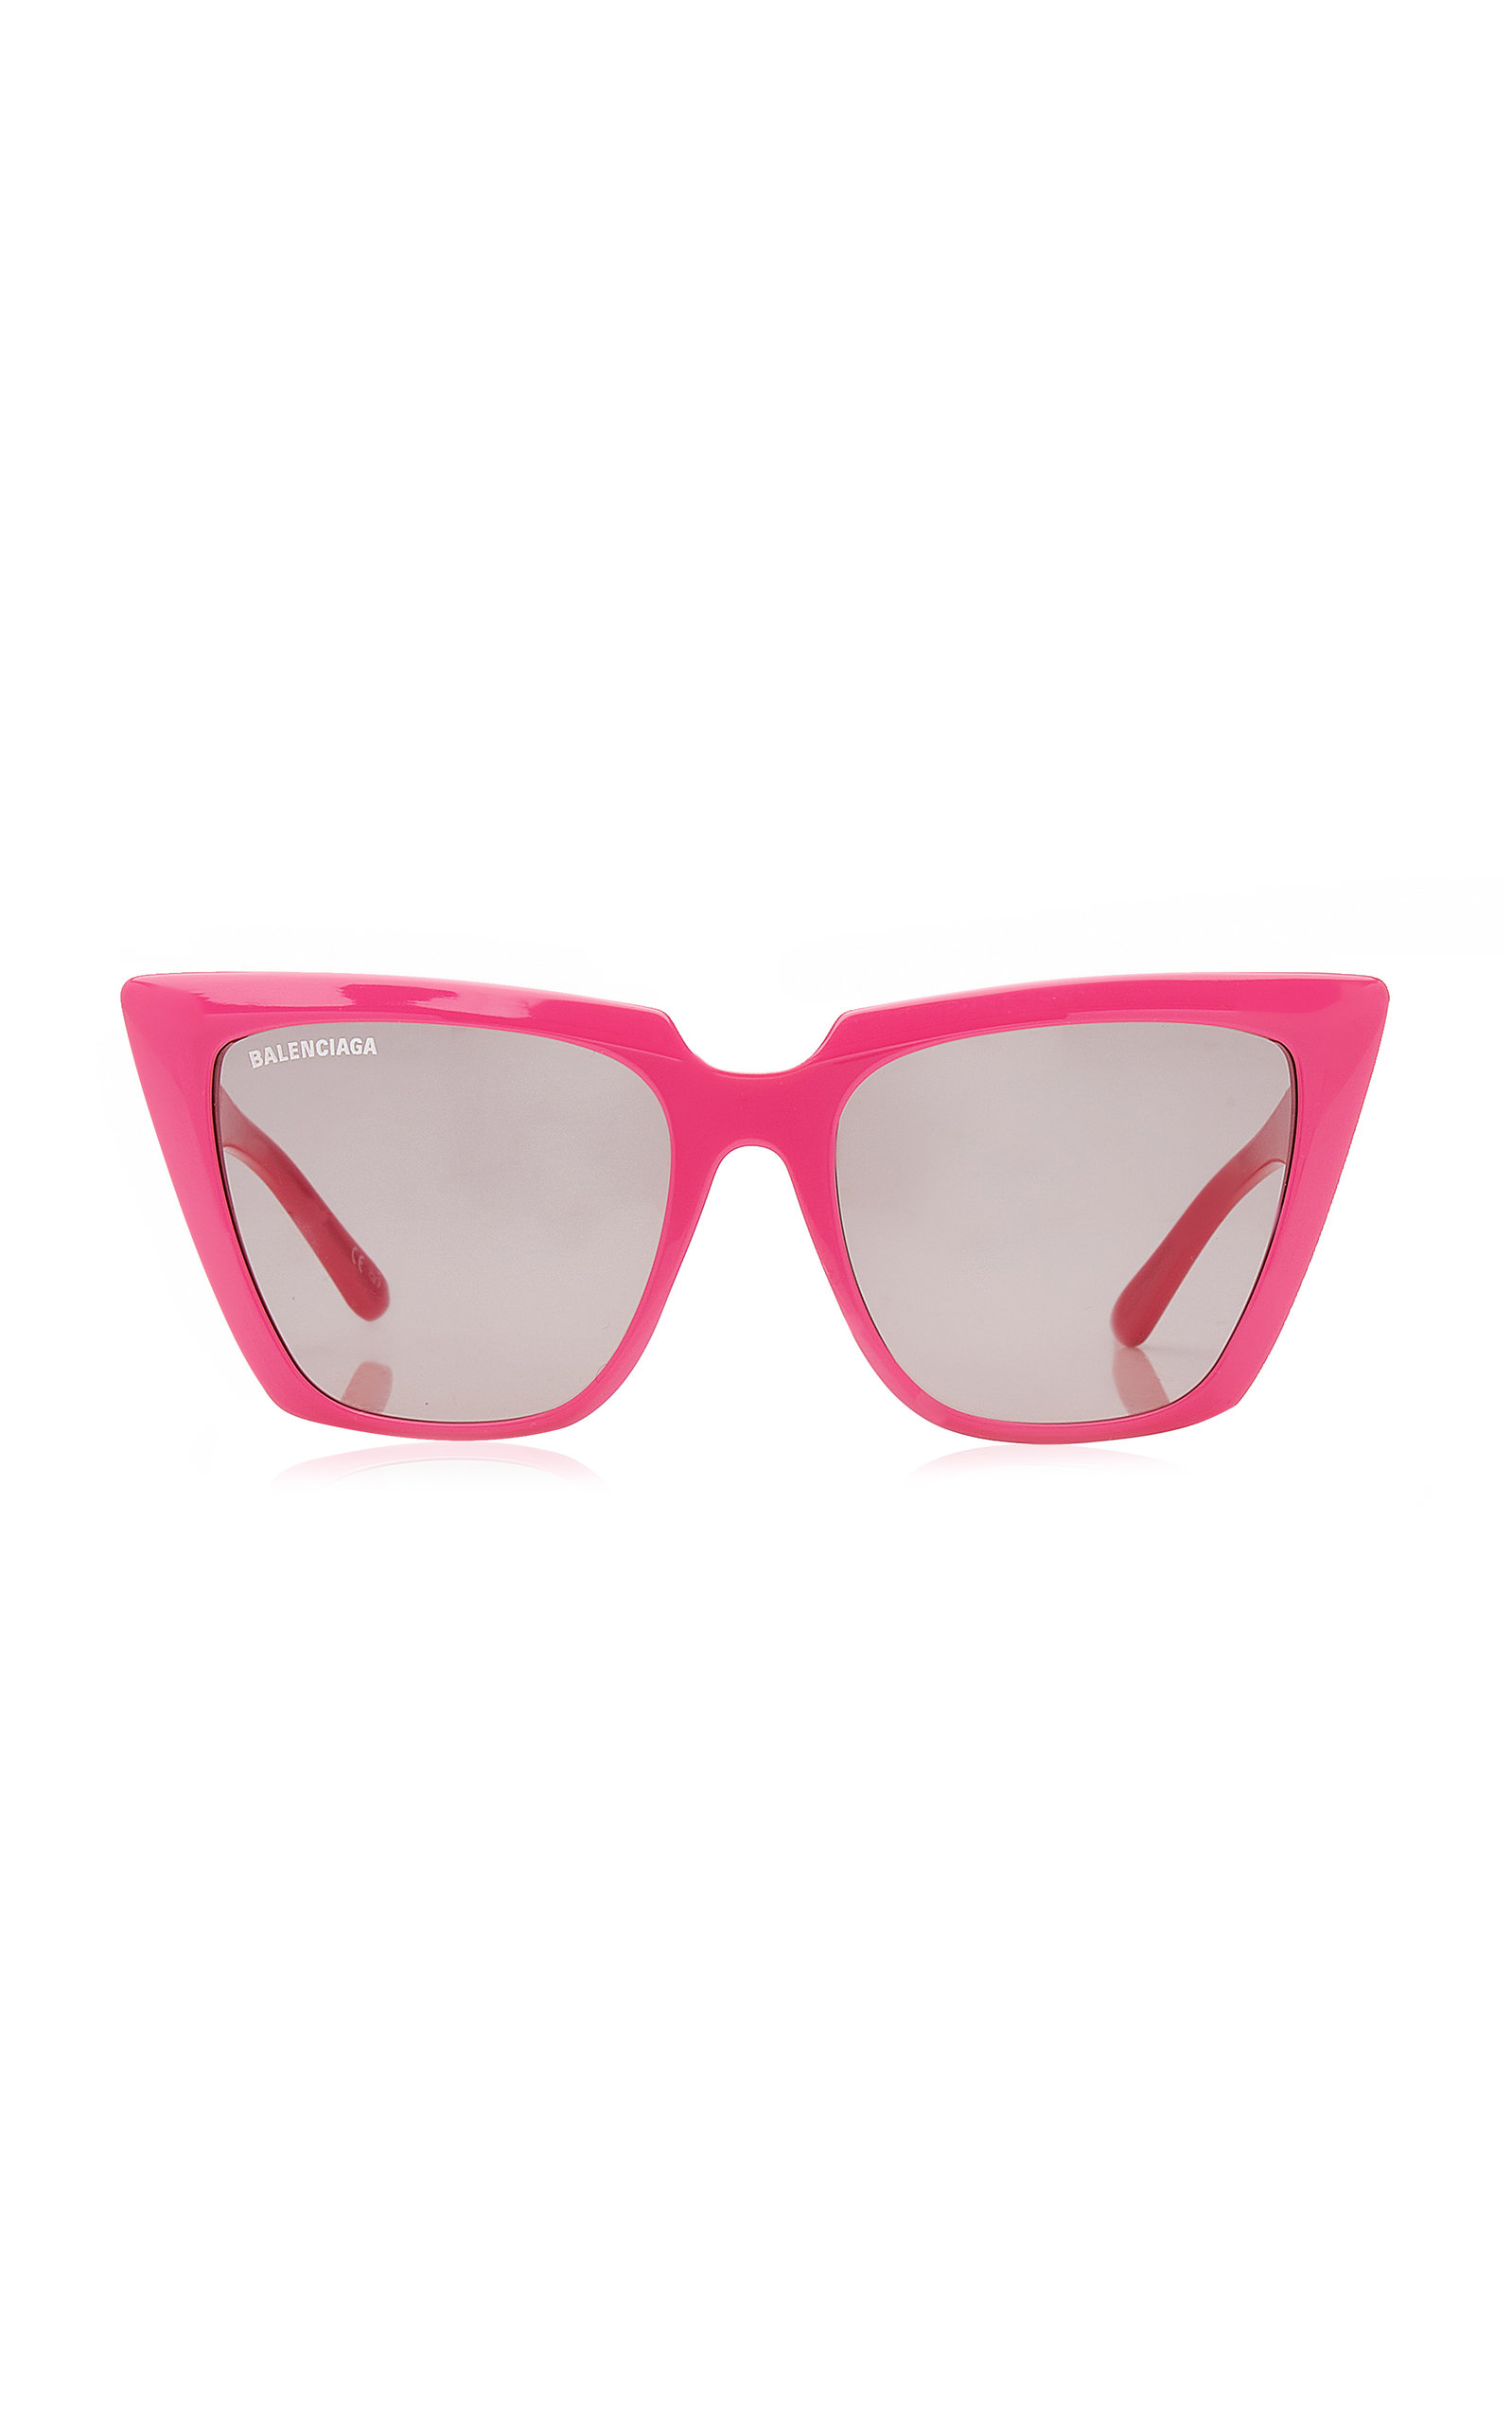 Balenciaga - Women's Cat-Eye Acetate Sunglasses - Pink - Moda Operandi